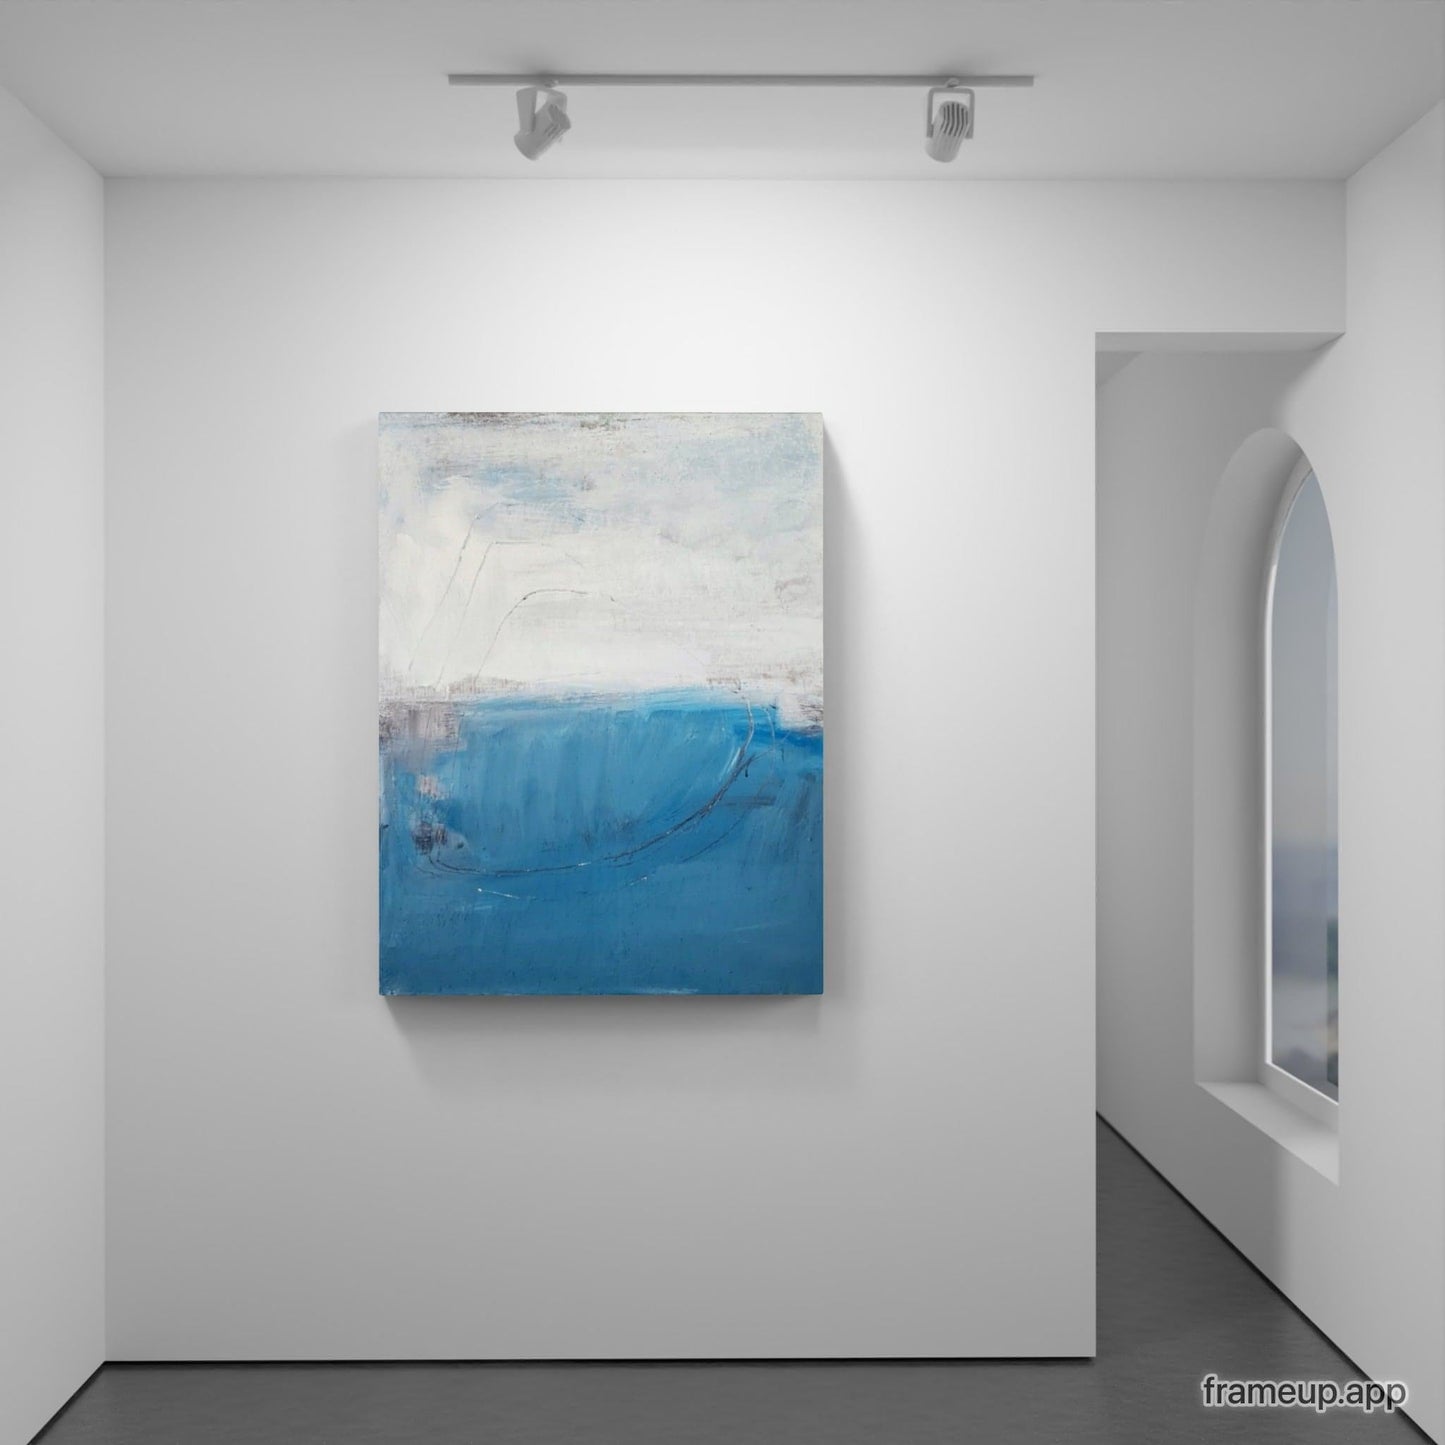  Meeresschwingung / 100 x 80 cm / Blau, Meeresschwingung / 160 x 160 cm / Blau  abstrakte acrylbilder auf leinwand